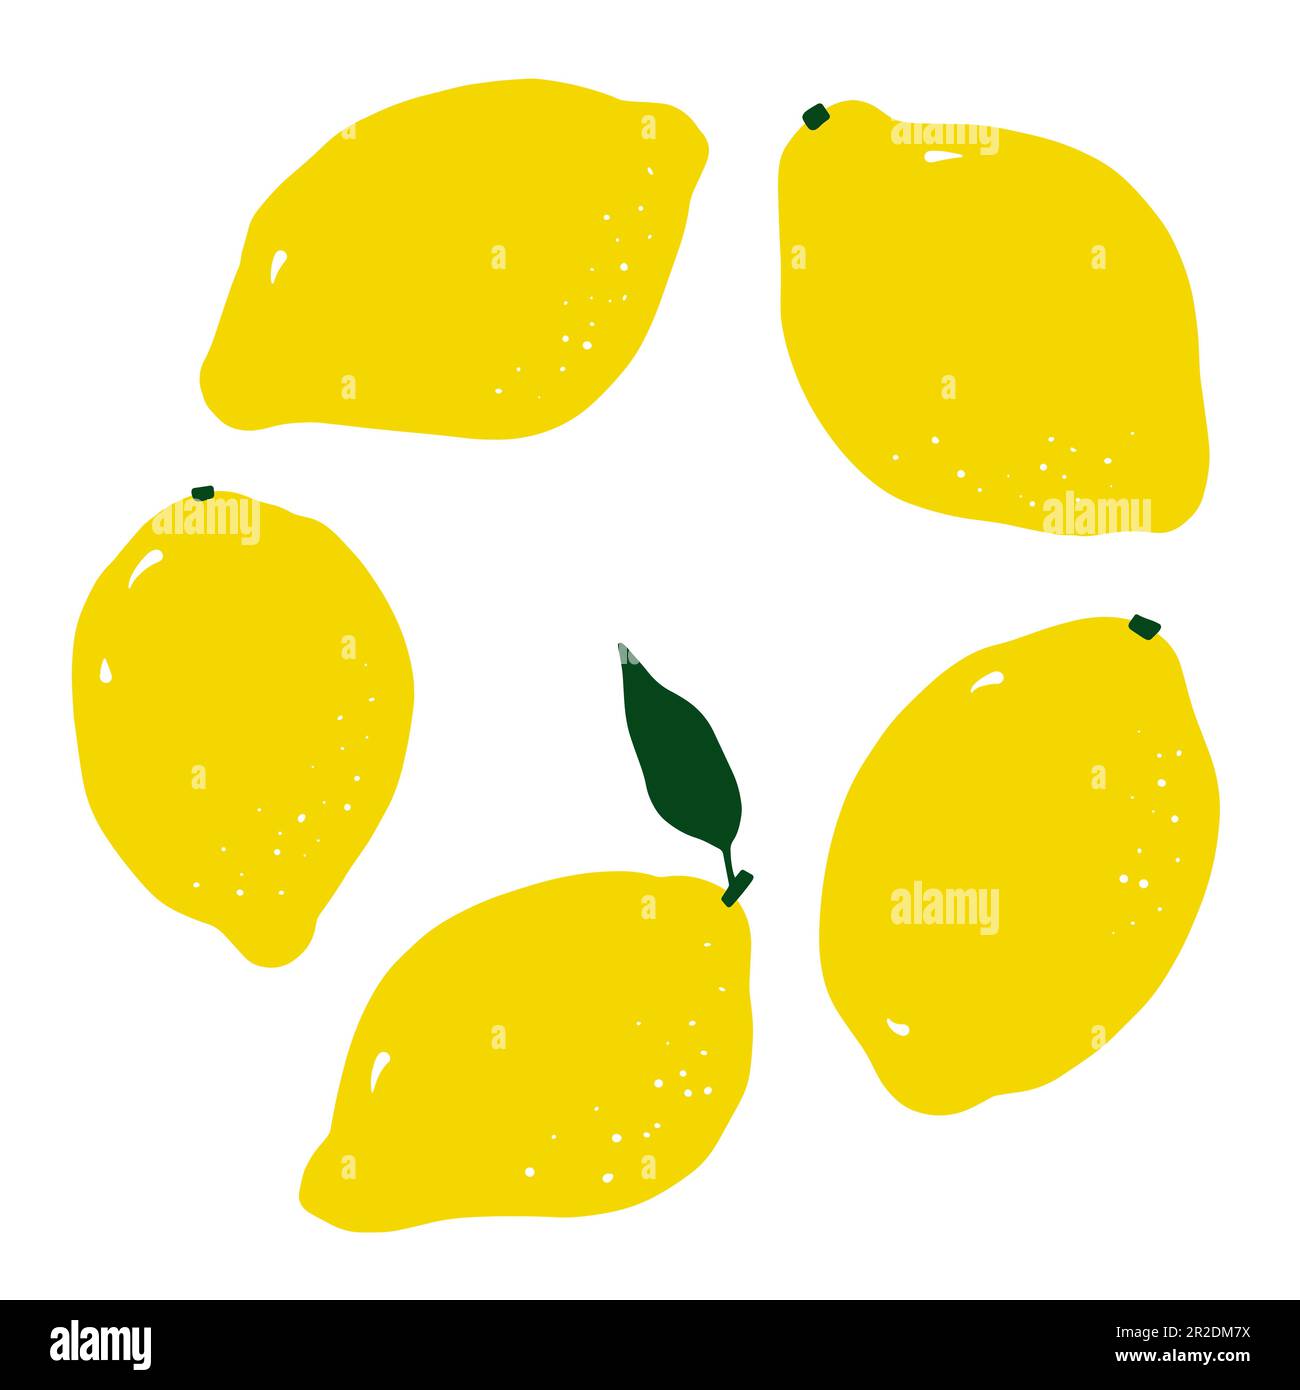 Limón amarillo de dibujos animados. Dibujado a mano cítricos aislados sobre fondo blanco. La fruta deliciosa es un símbolo del verano, la nutrición sana, la comida natural. Ingred Ilustración del Vector